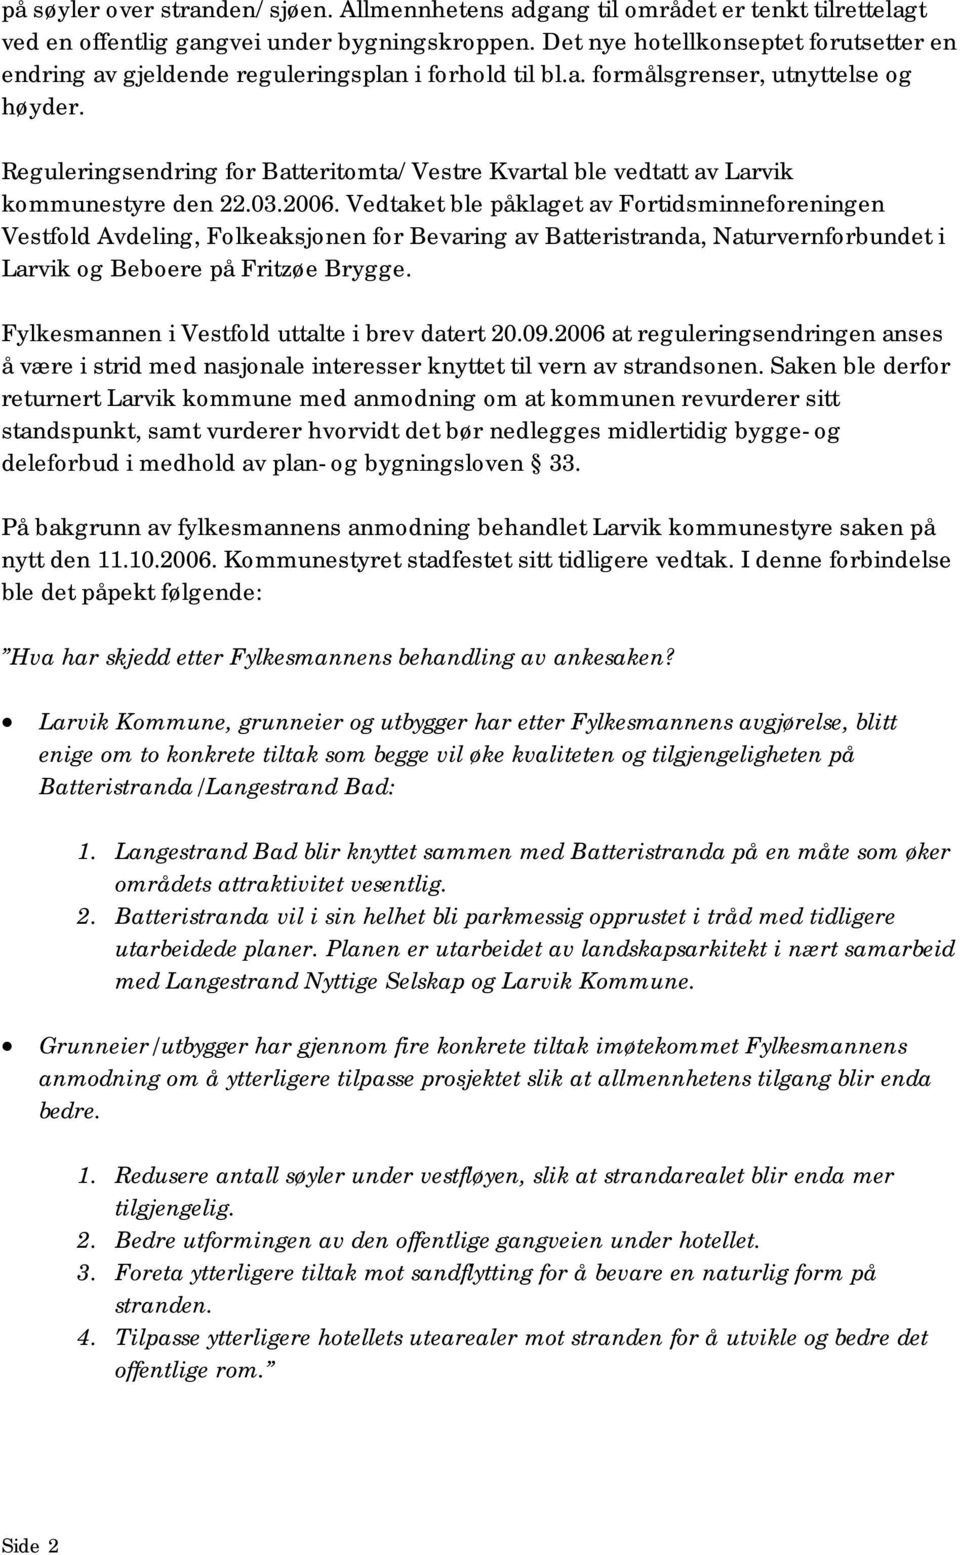 Reguleringsendring for Batteritomta/Vestre Kvartal ble vedtatt av Larvik kommunestyre den 22.03.2006.